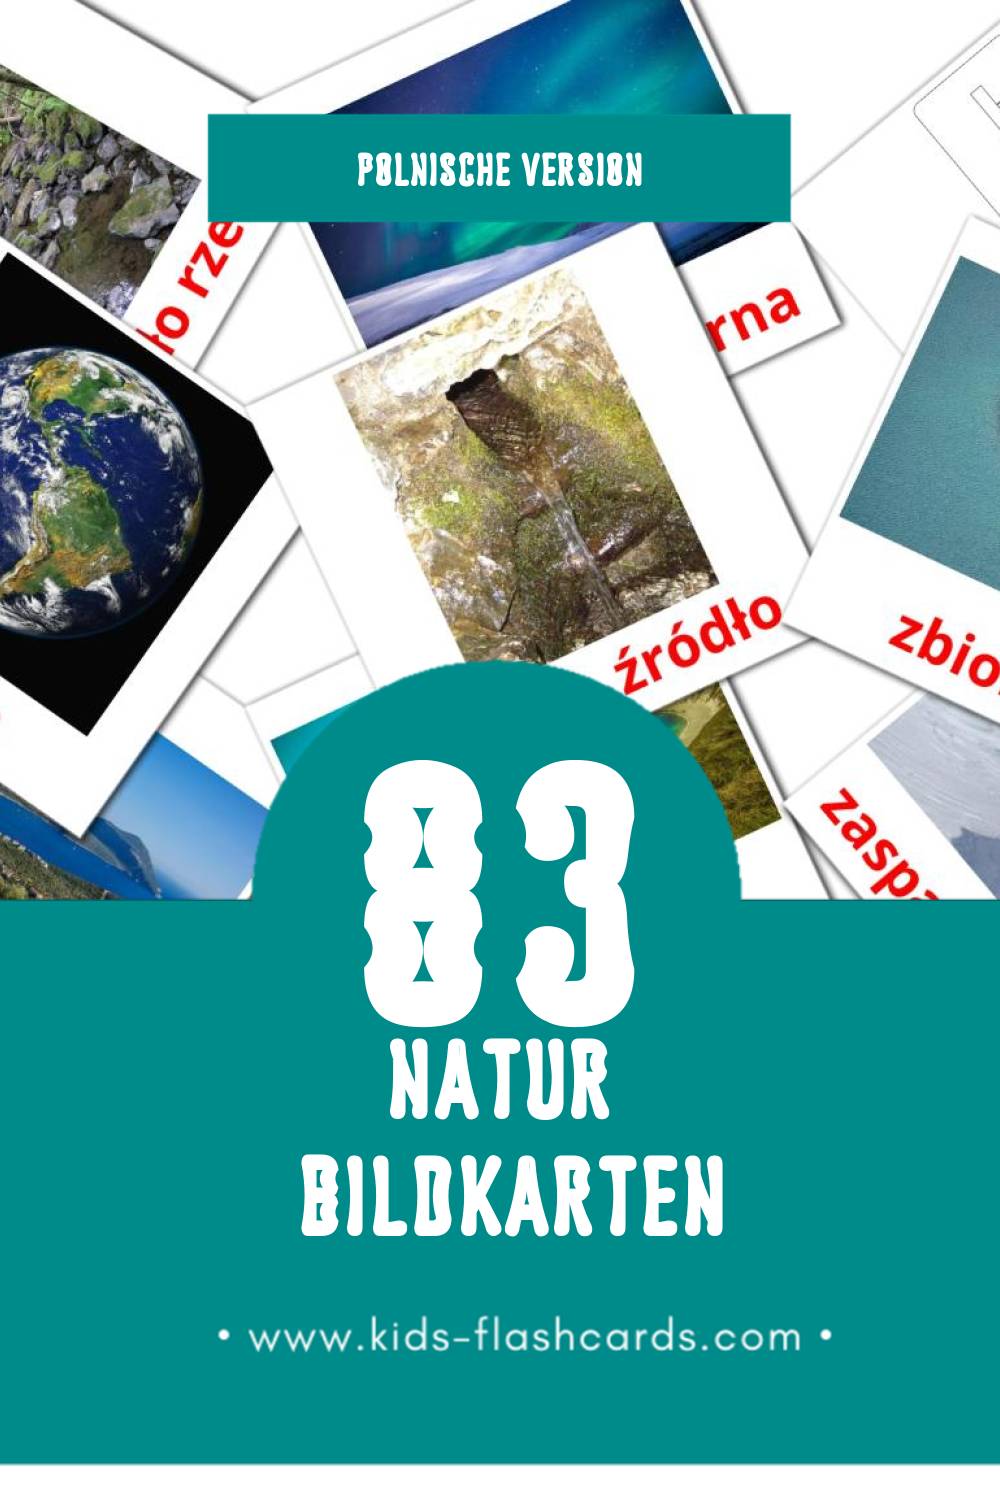 Visual Przyroda Flashcards für Kleinkinder (83 Karten in Polnisch)